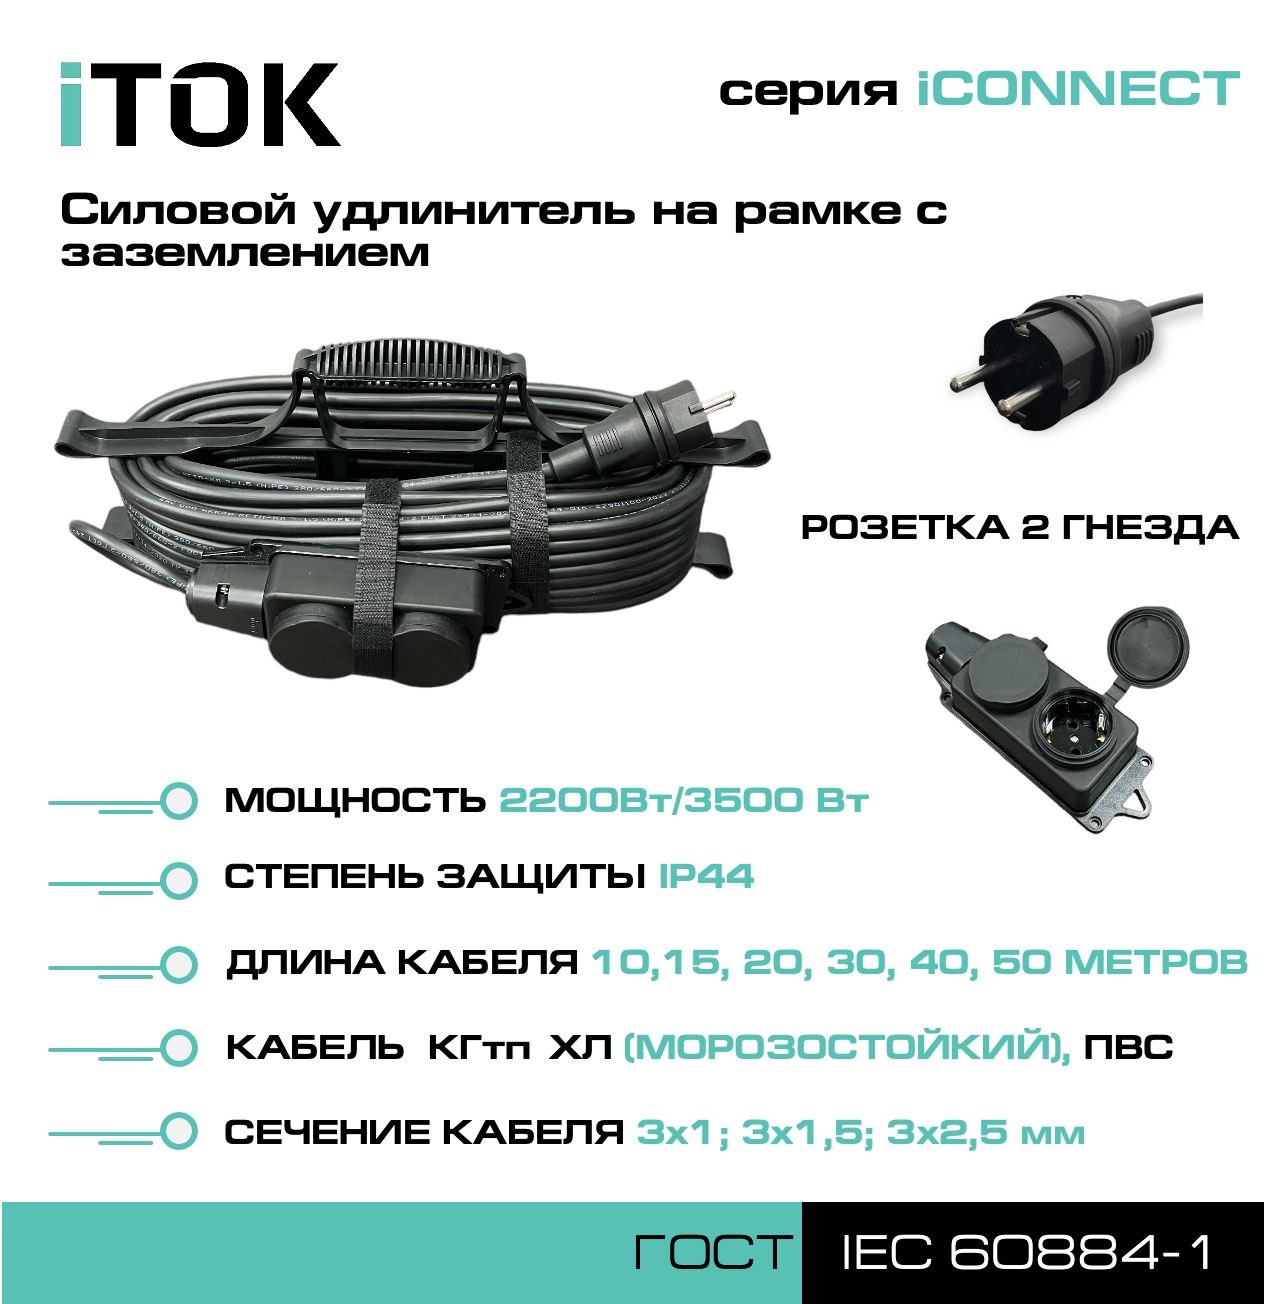 Удлинитель на рамке с заземлением серии iTOK iCONNECT КГтп-ХЛ 3х1,5 мм 2 гнезда IP44 30 м